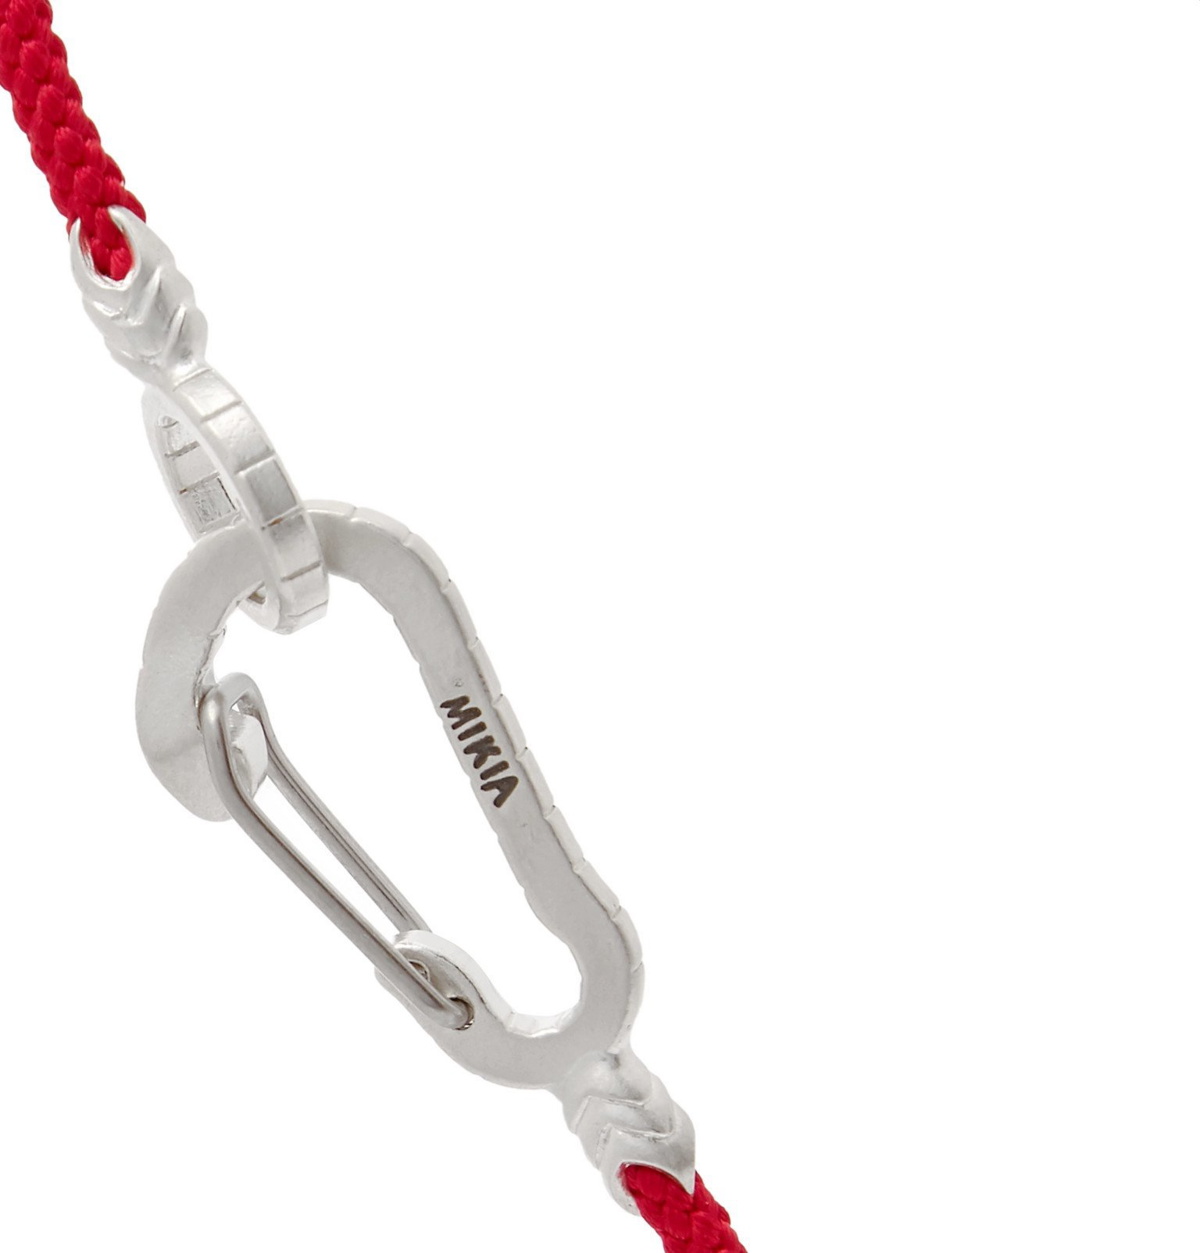 Mikia - Cord and Silver-Tone Bracelet - Red Mikia